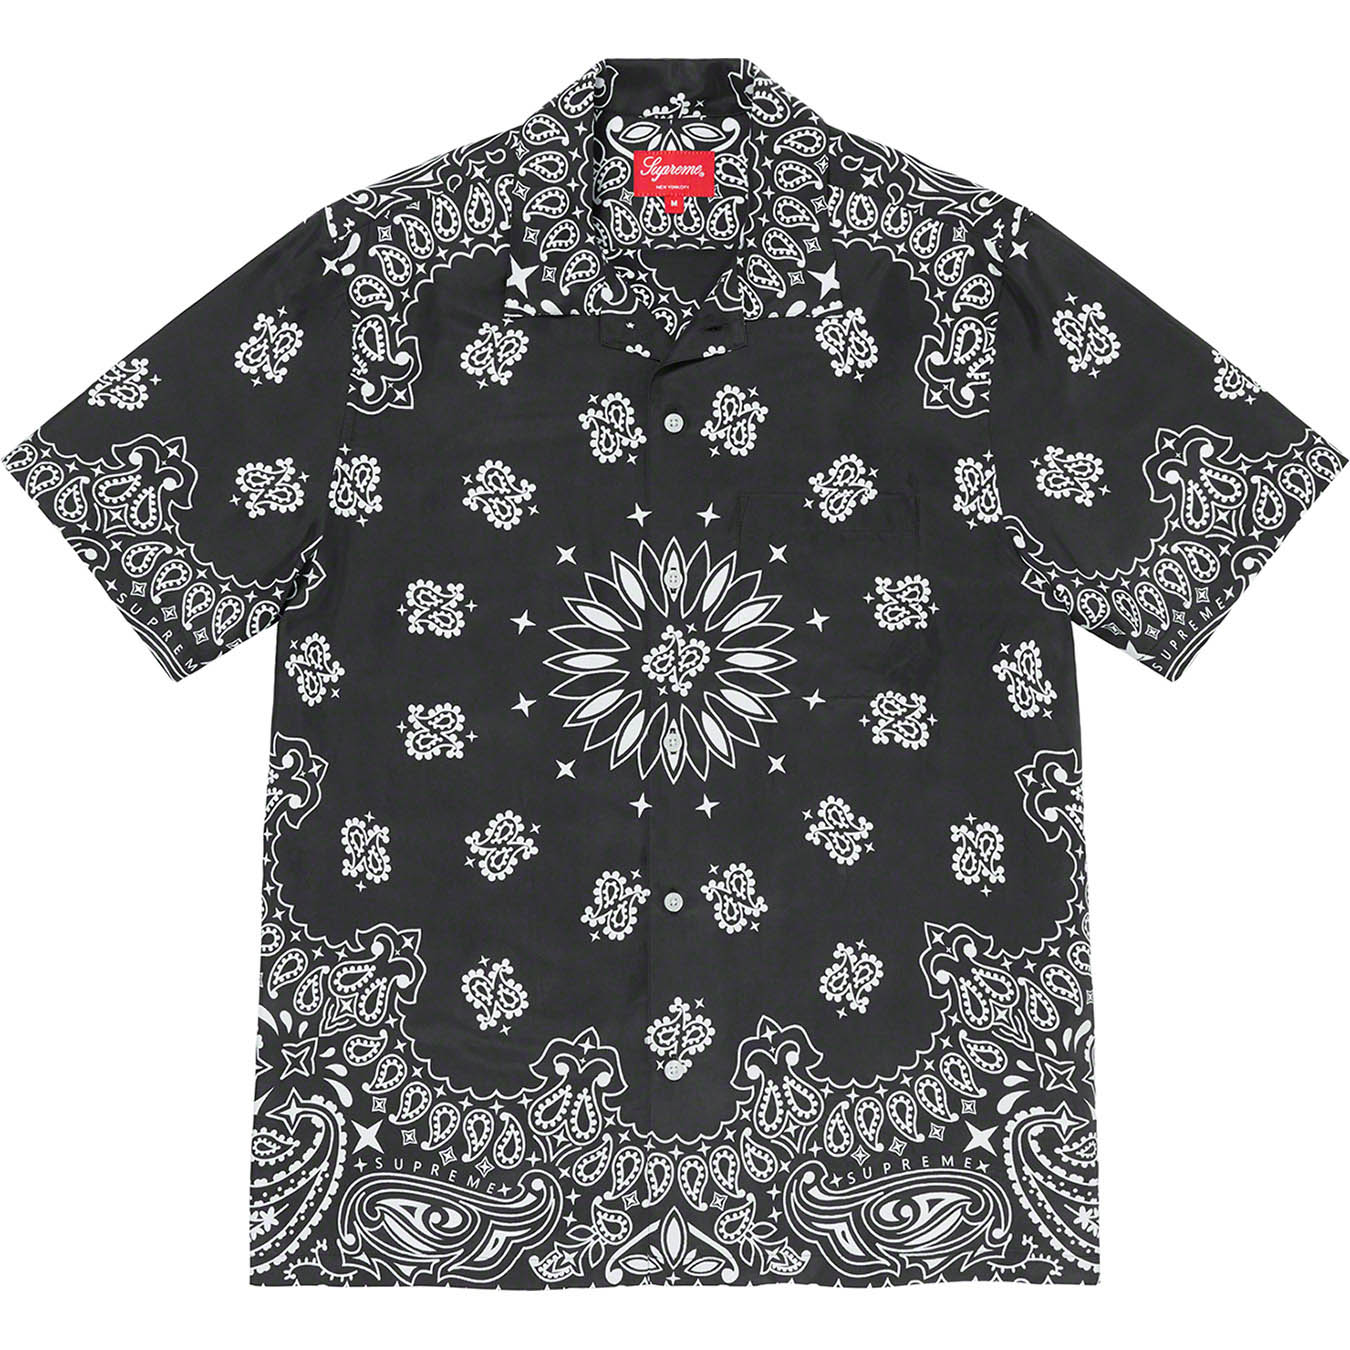 Supreme Bandana Silk S/S Shirt